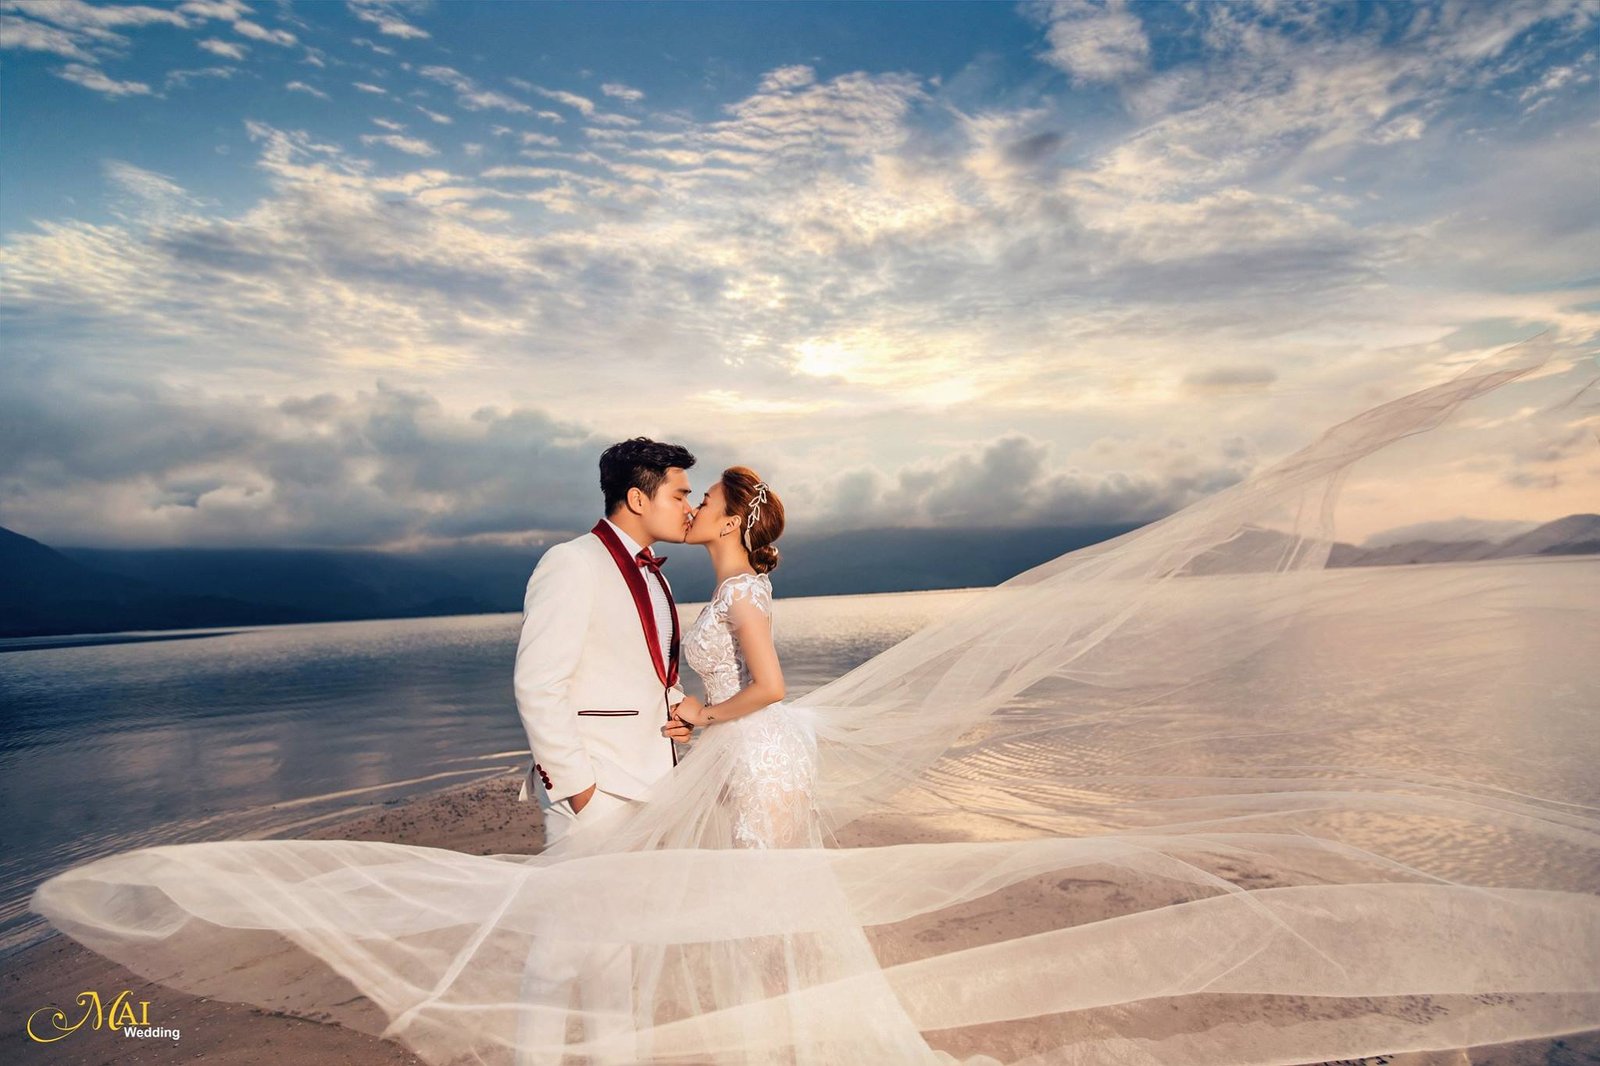 Studio chụp ảnh cưới đẹp và nổi tiếng nhất Đà Nẵng Mai Wedding